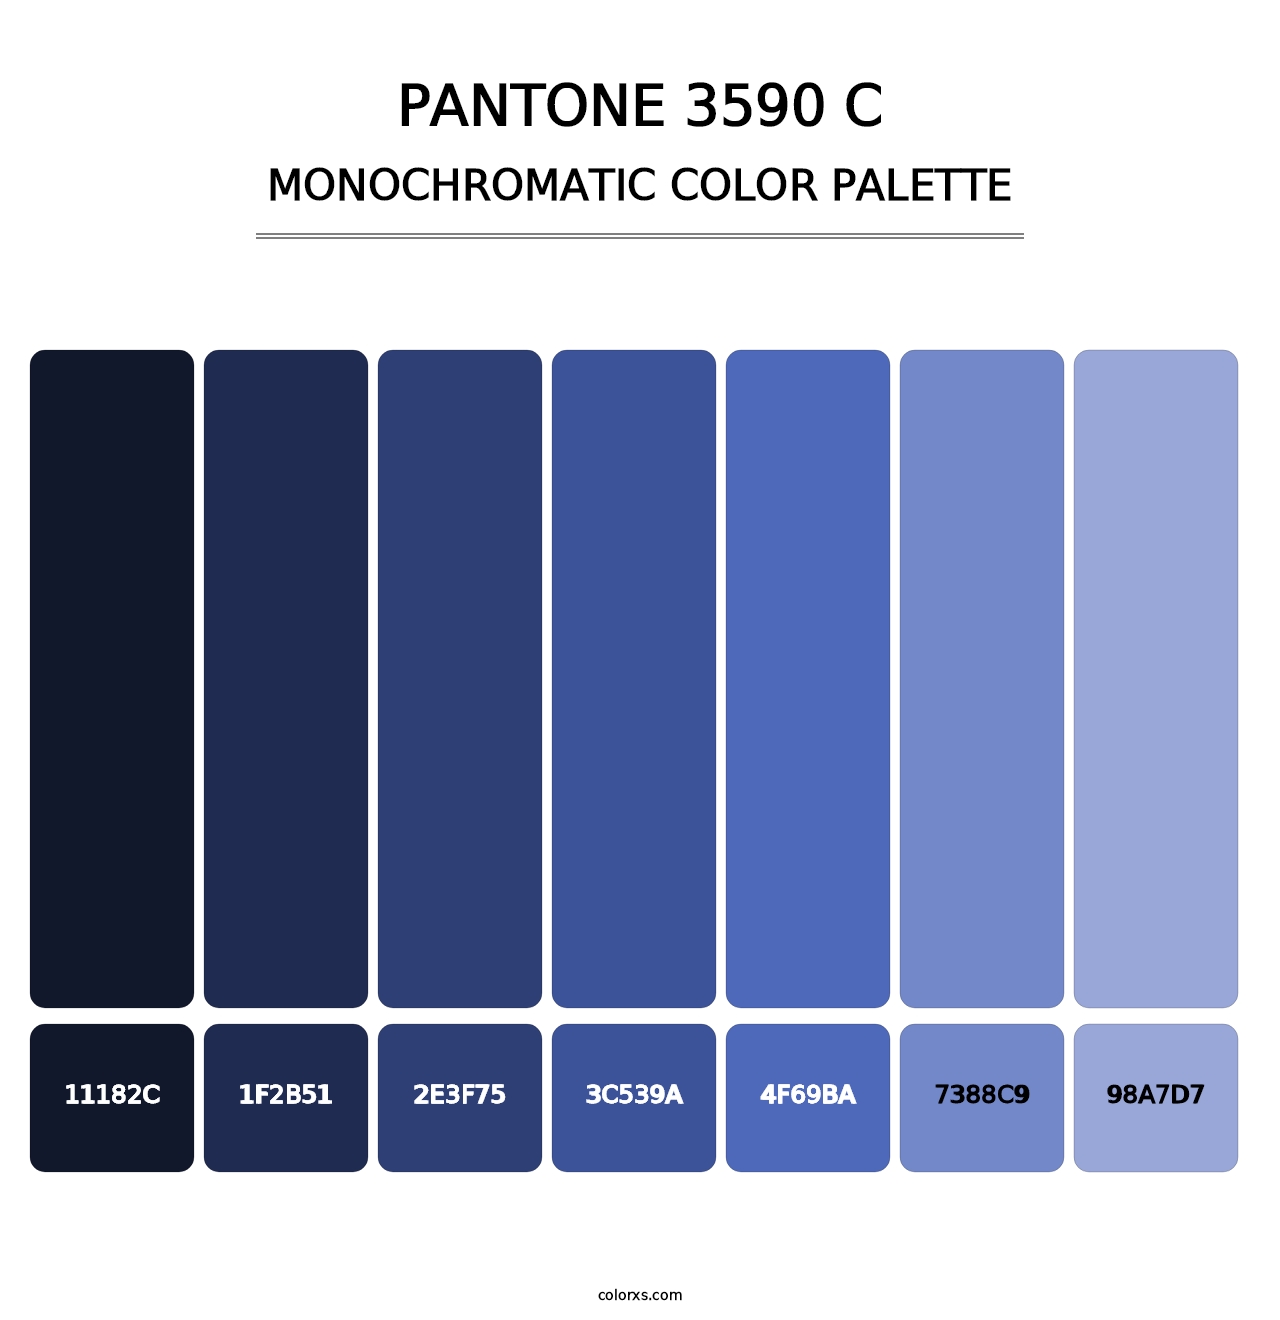 PANTONE 3590 C - Monochromatic Color Palette